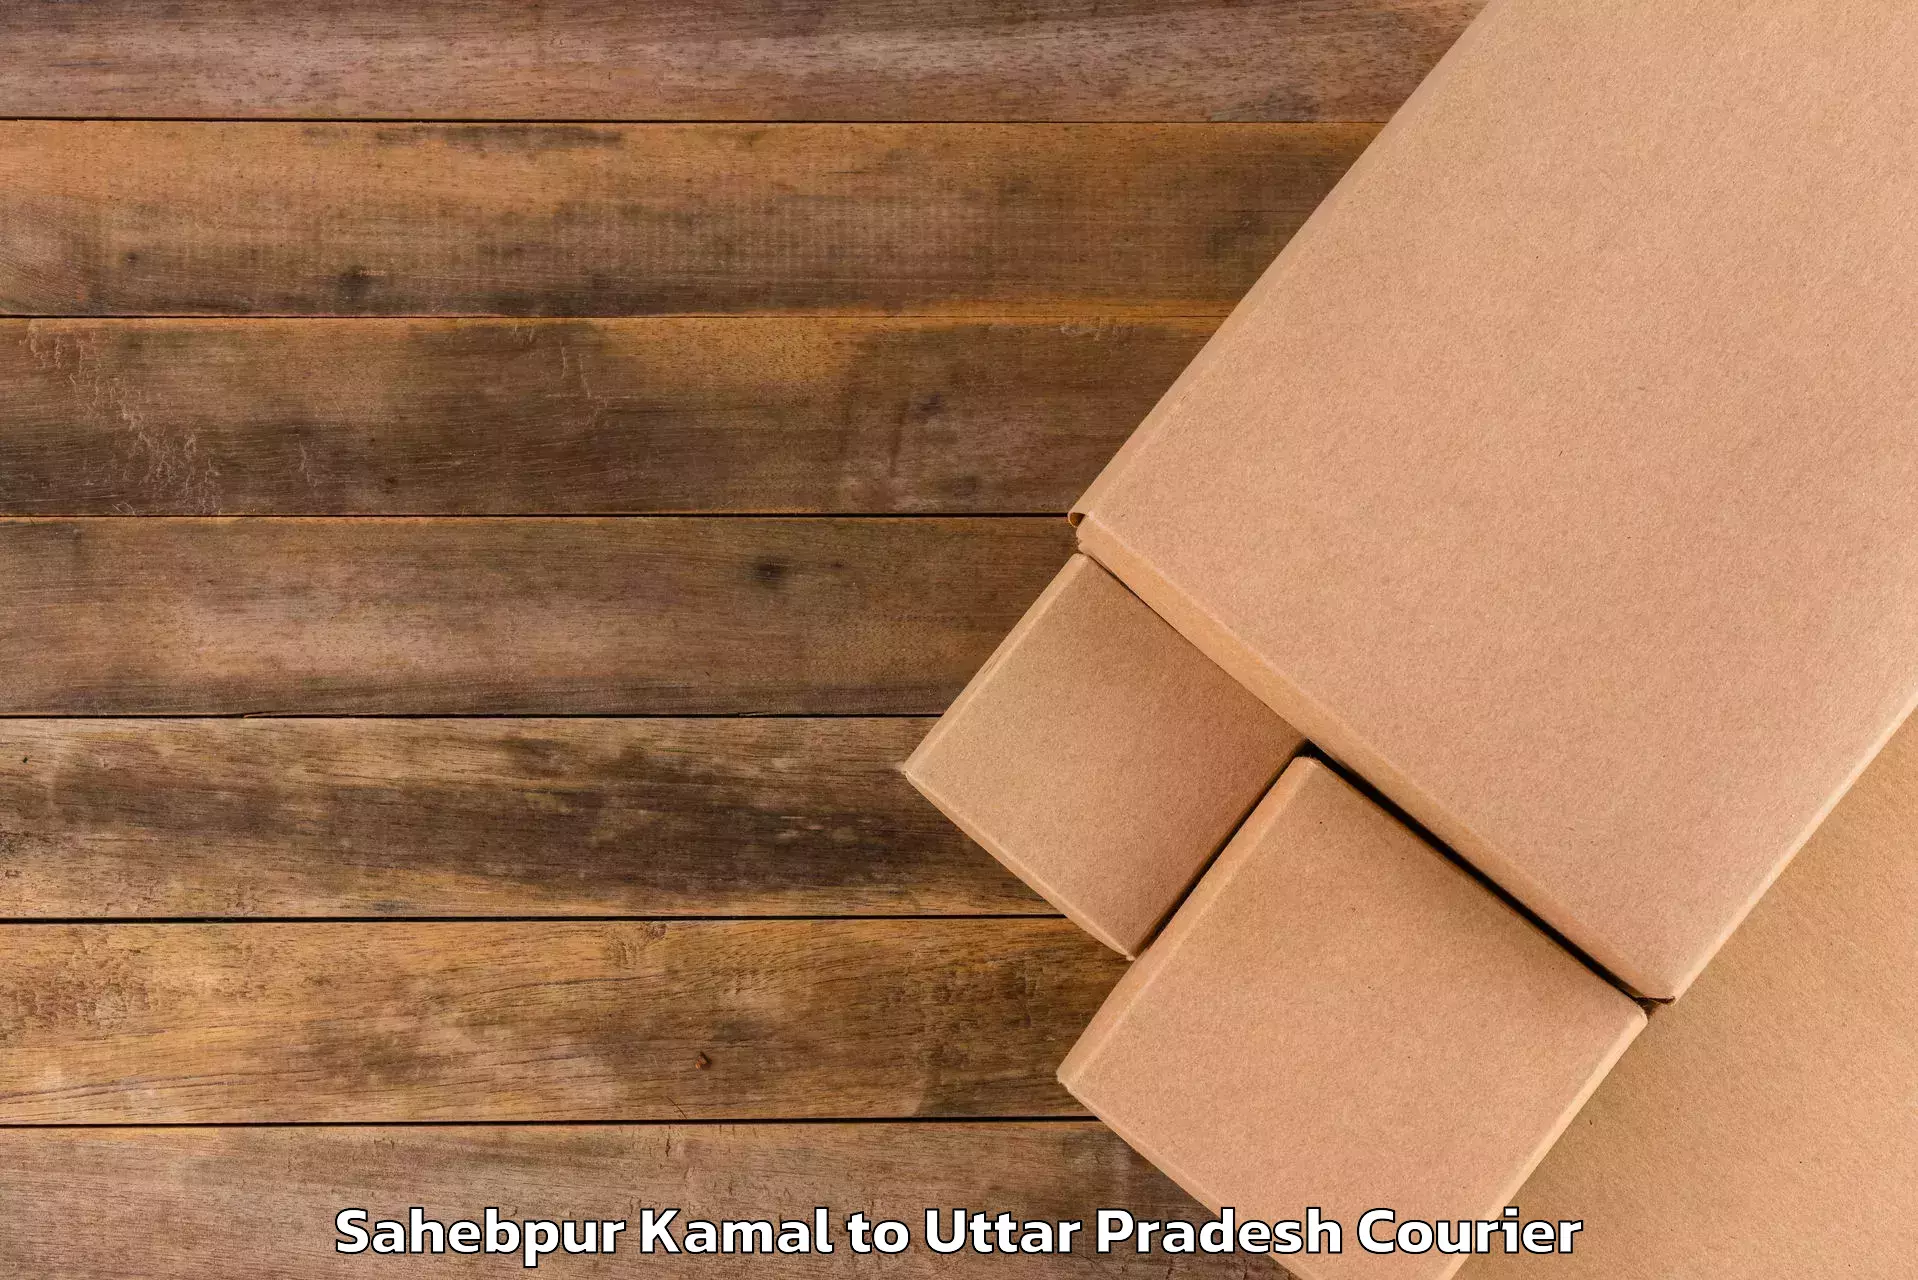 Comprehensive baggage service Sahebpur Kamal to Uttar Pradesh